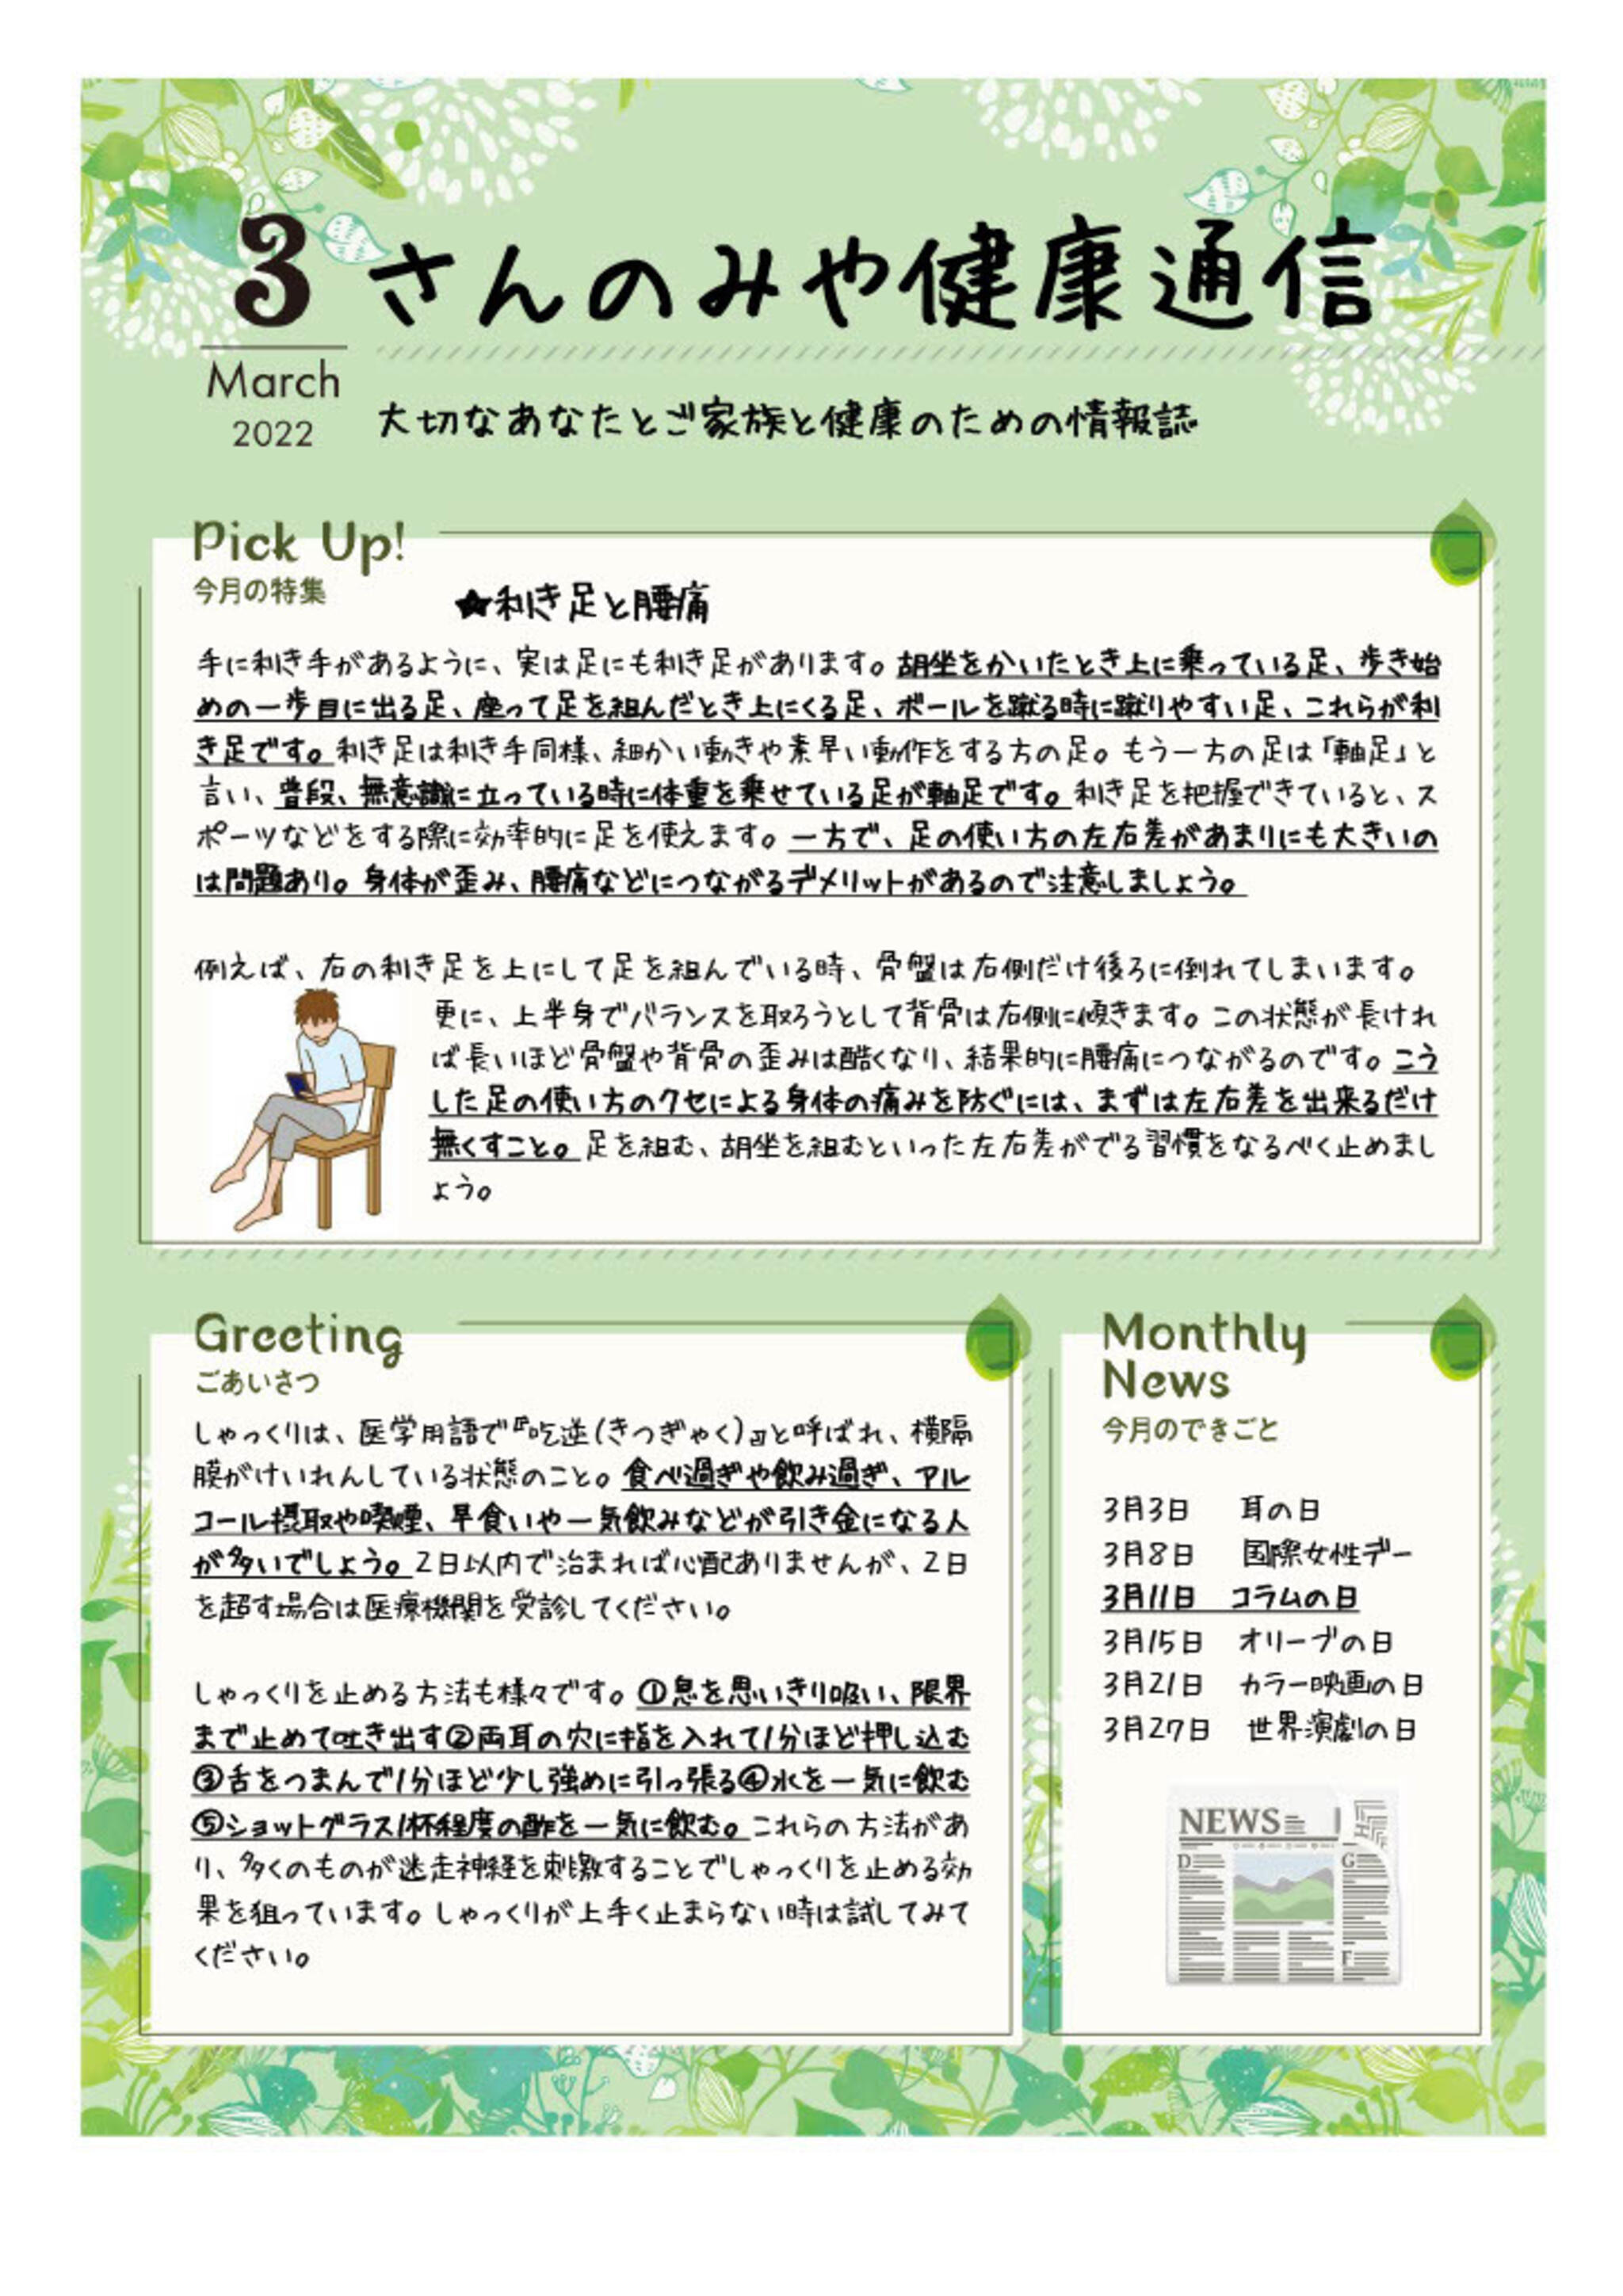 神戸三宮むつう整体院からのお知らせ(利き足と腰痛)に関する写真